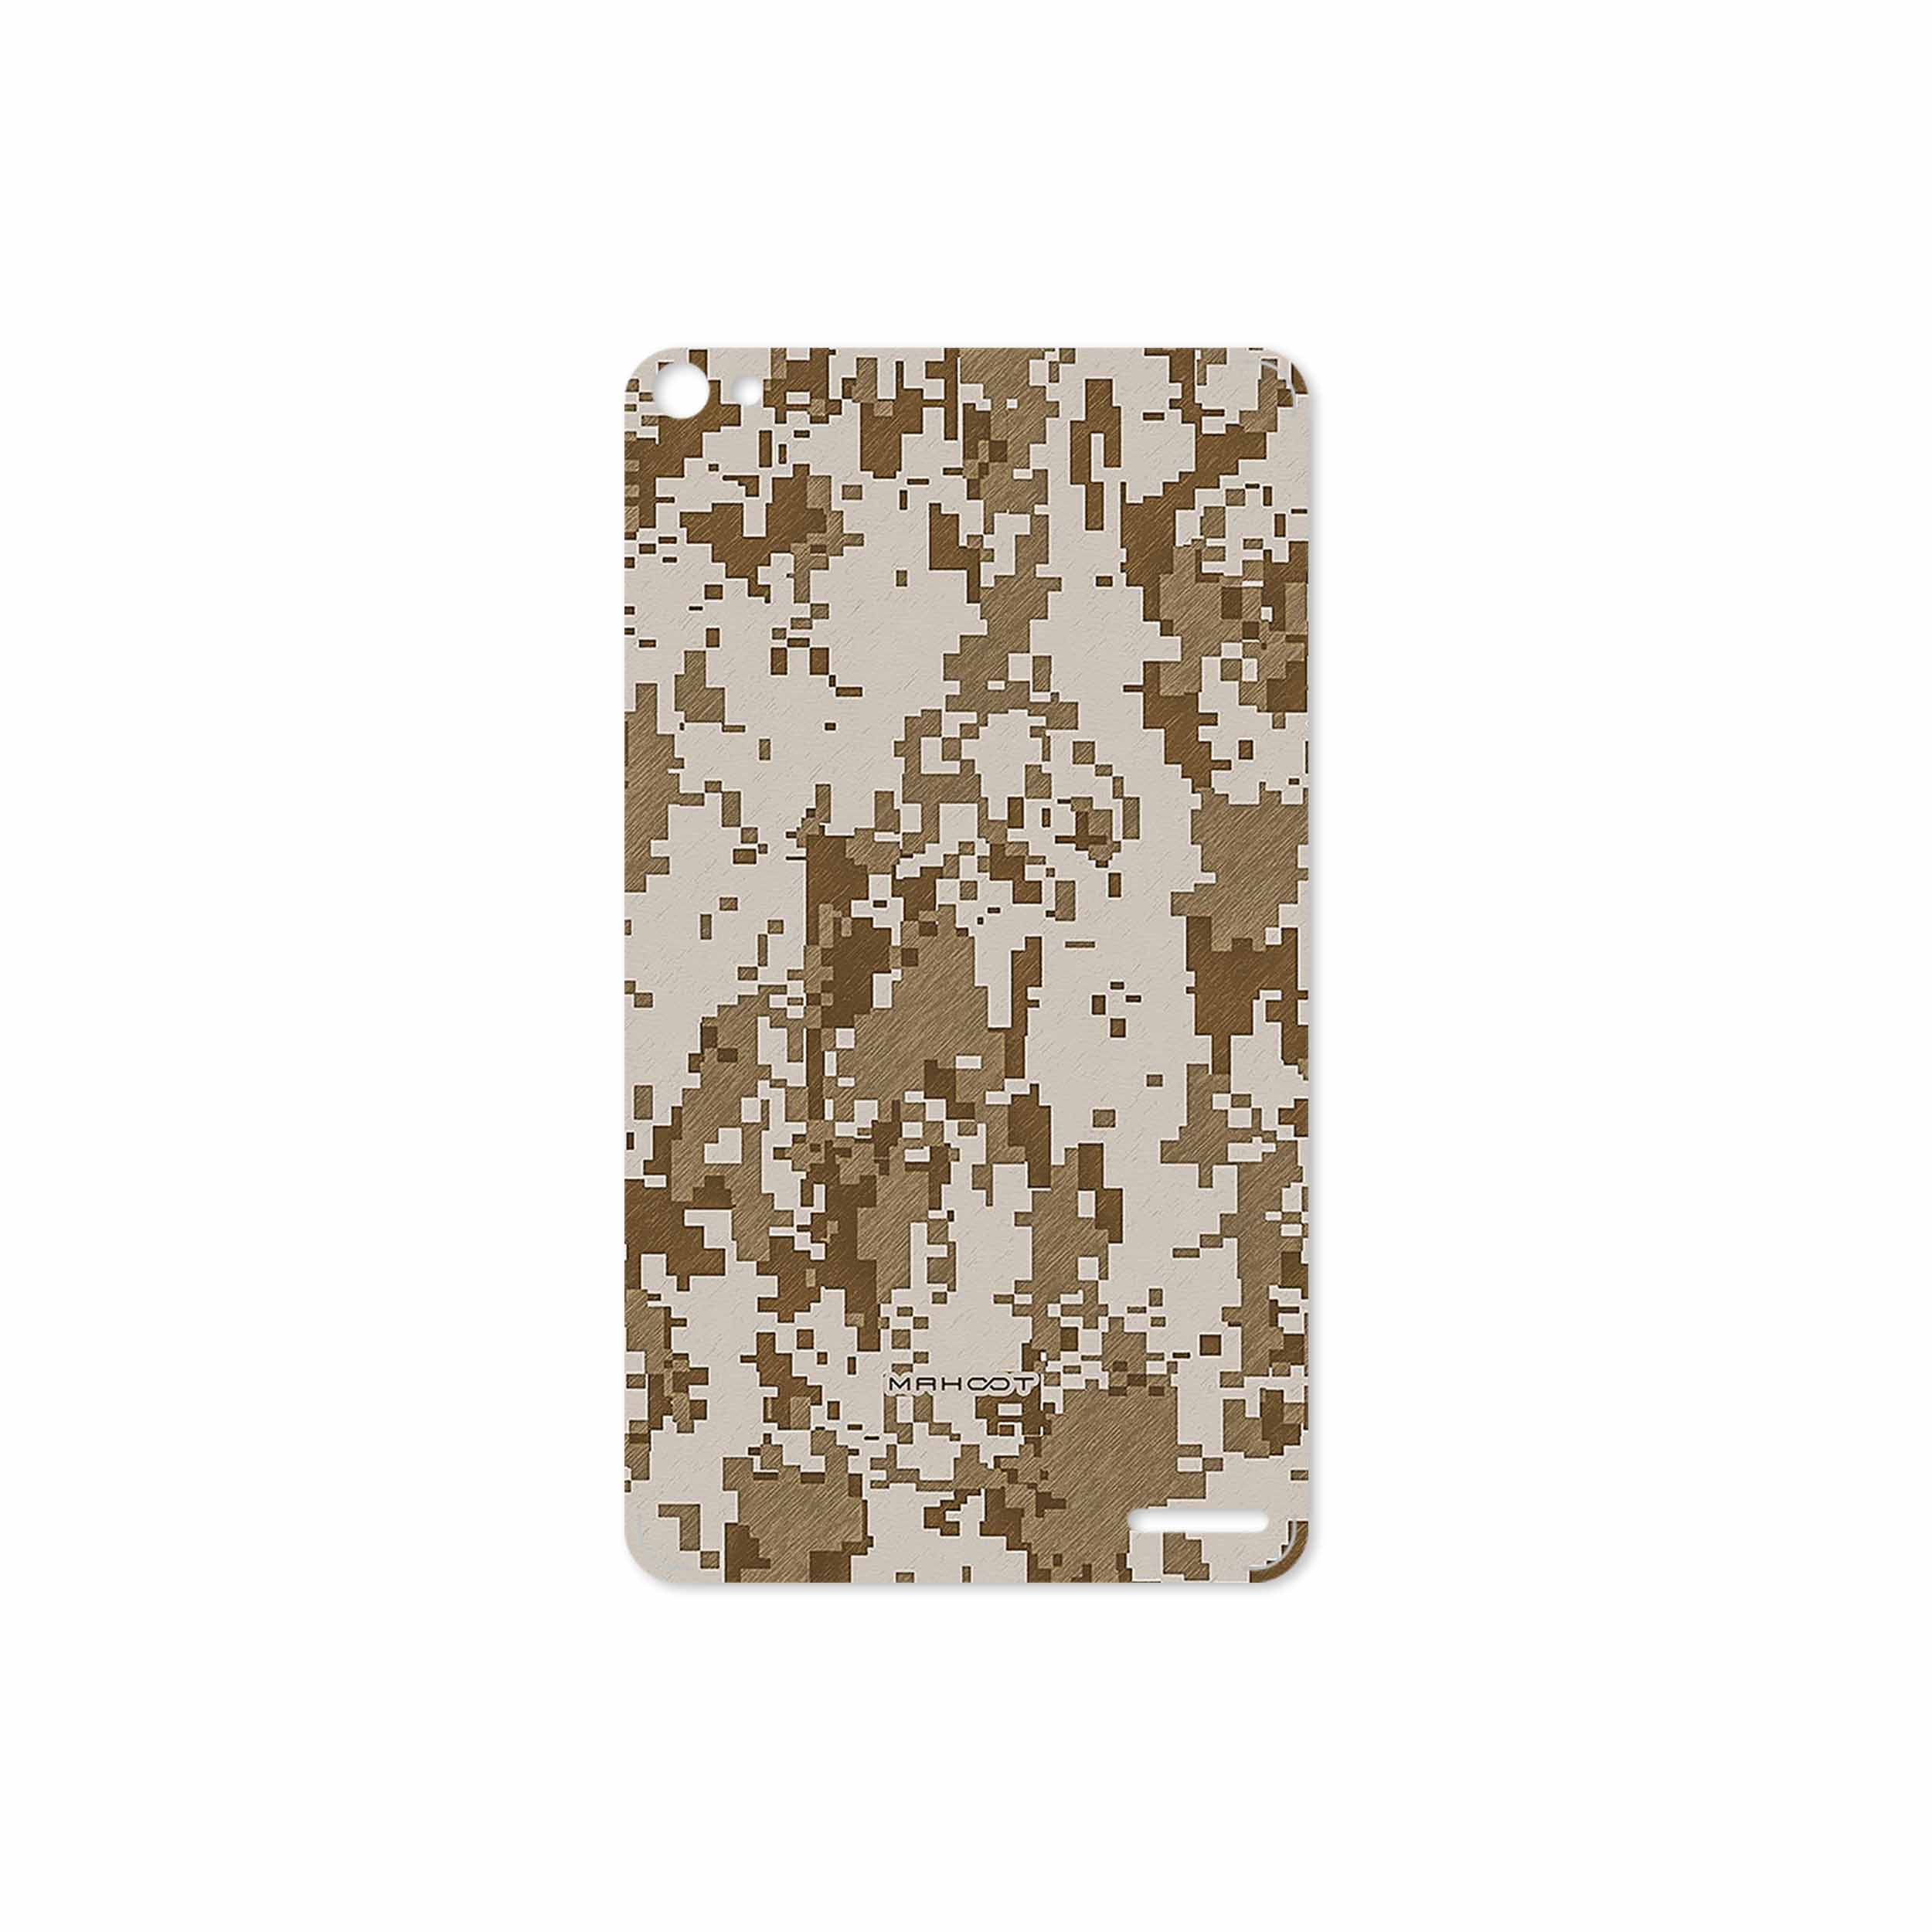 برچسب پوششی ماهوت مدل Army-Desert-Pixel مناسب برای تبلت هوآوی Mediapad X2 2015